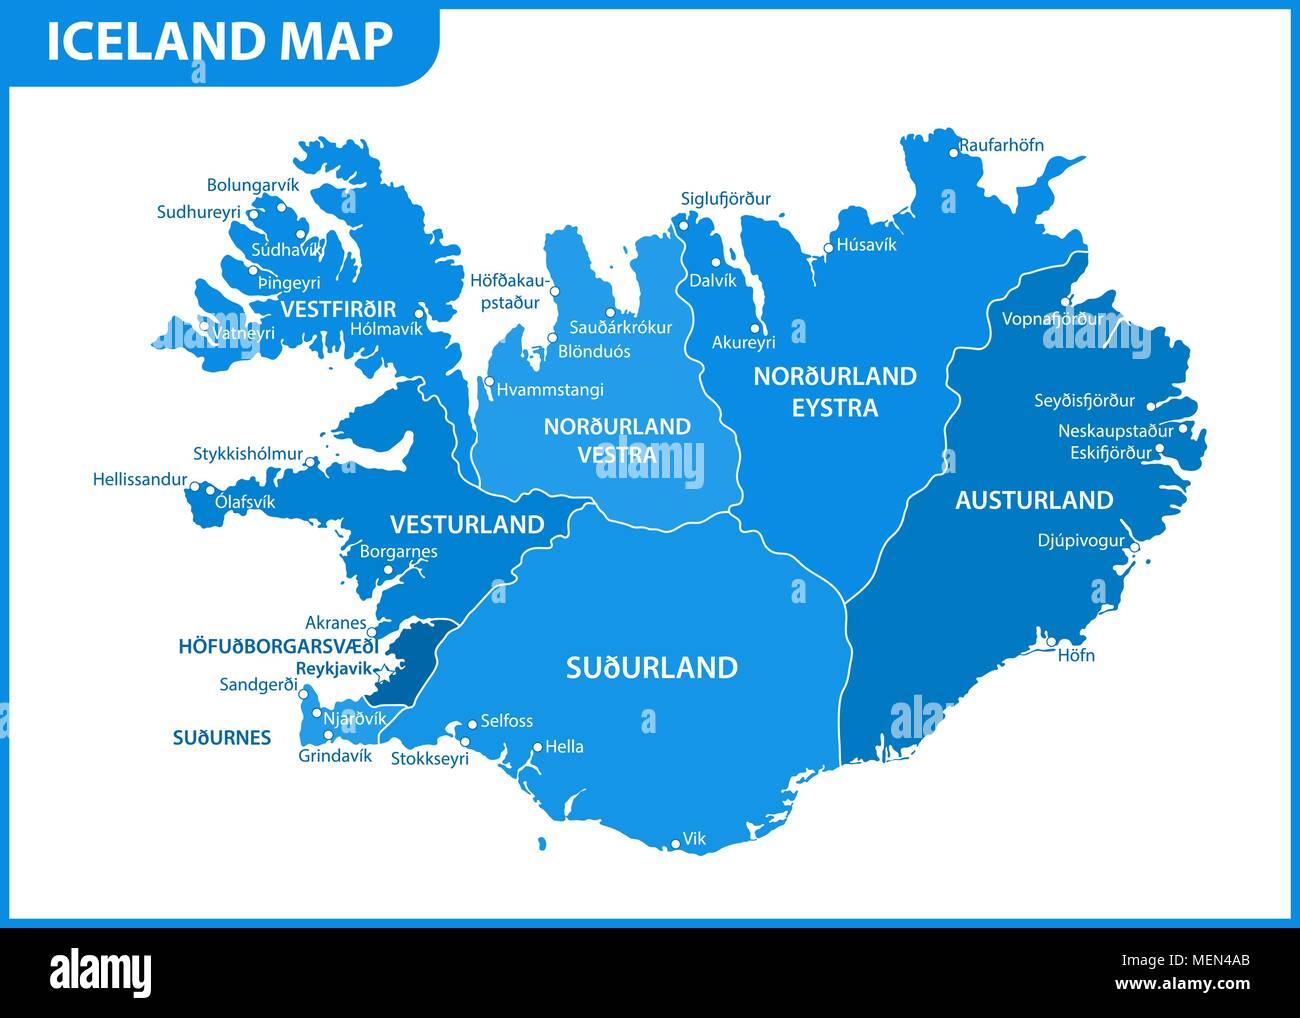 Административная карта Исландии